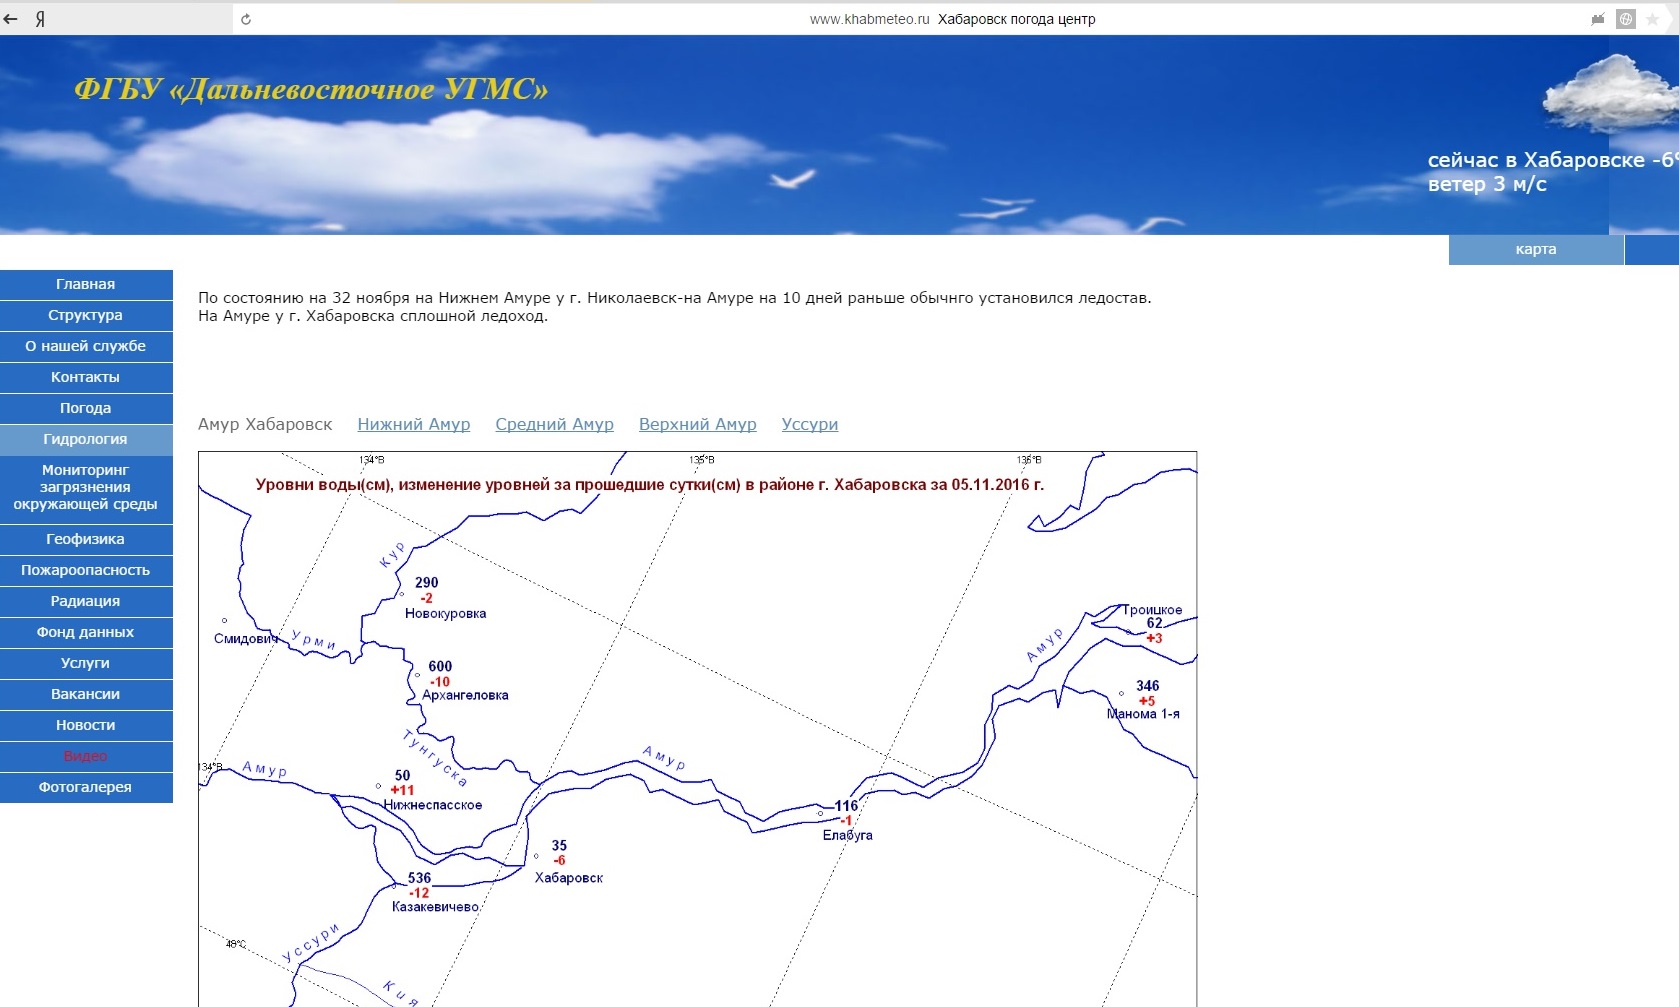 Уровень амура у хабаровска сейчас. Хабаровск гидрология реки Амур. Карта Амура у Хабаровска. Уровень воды в Амуре у Хабаровска.